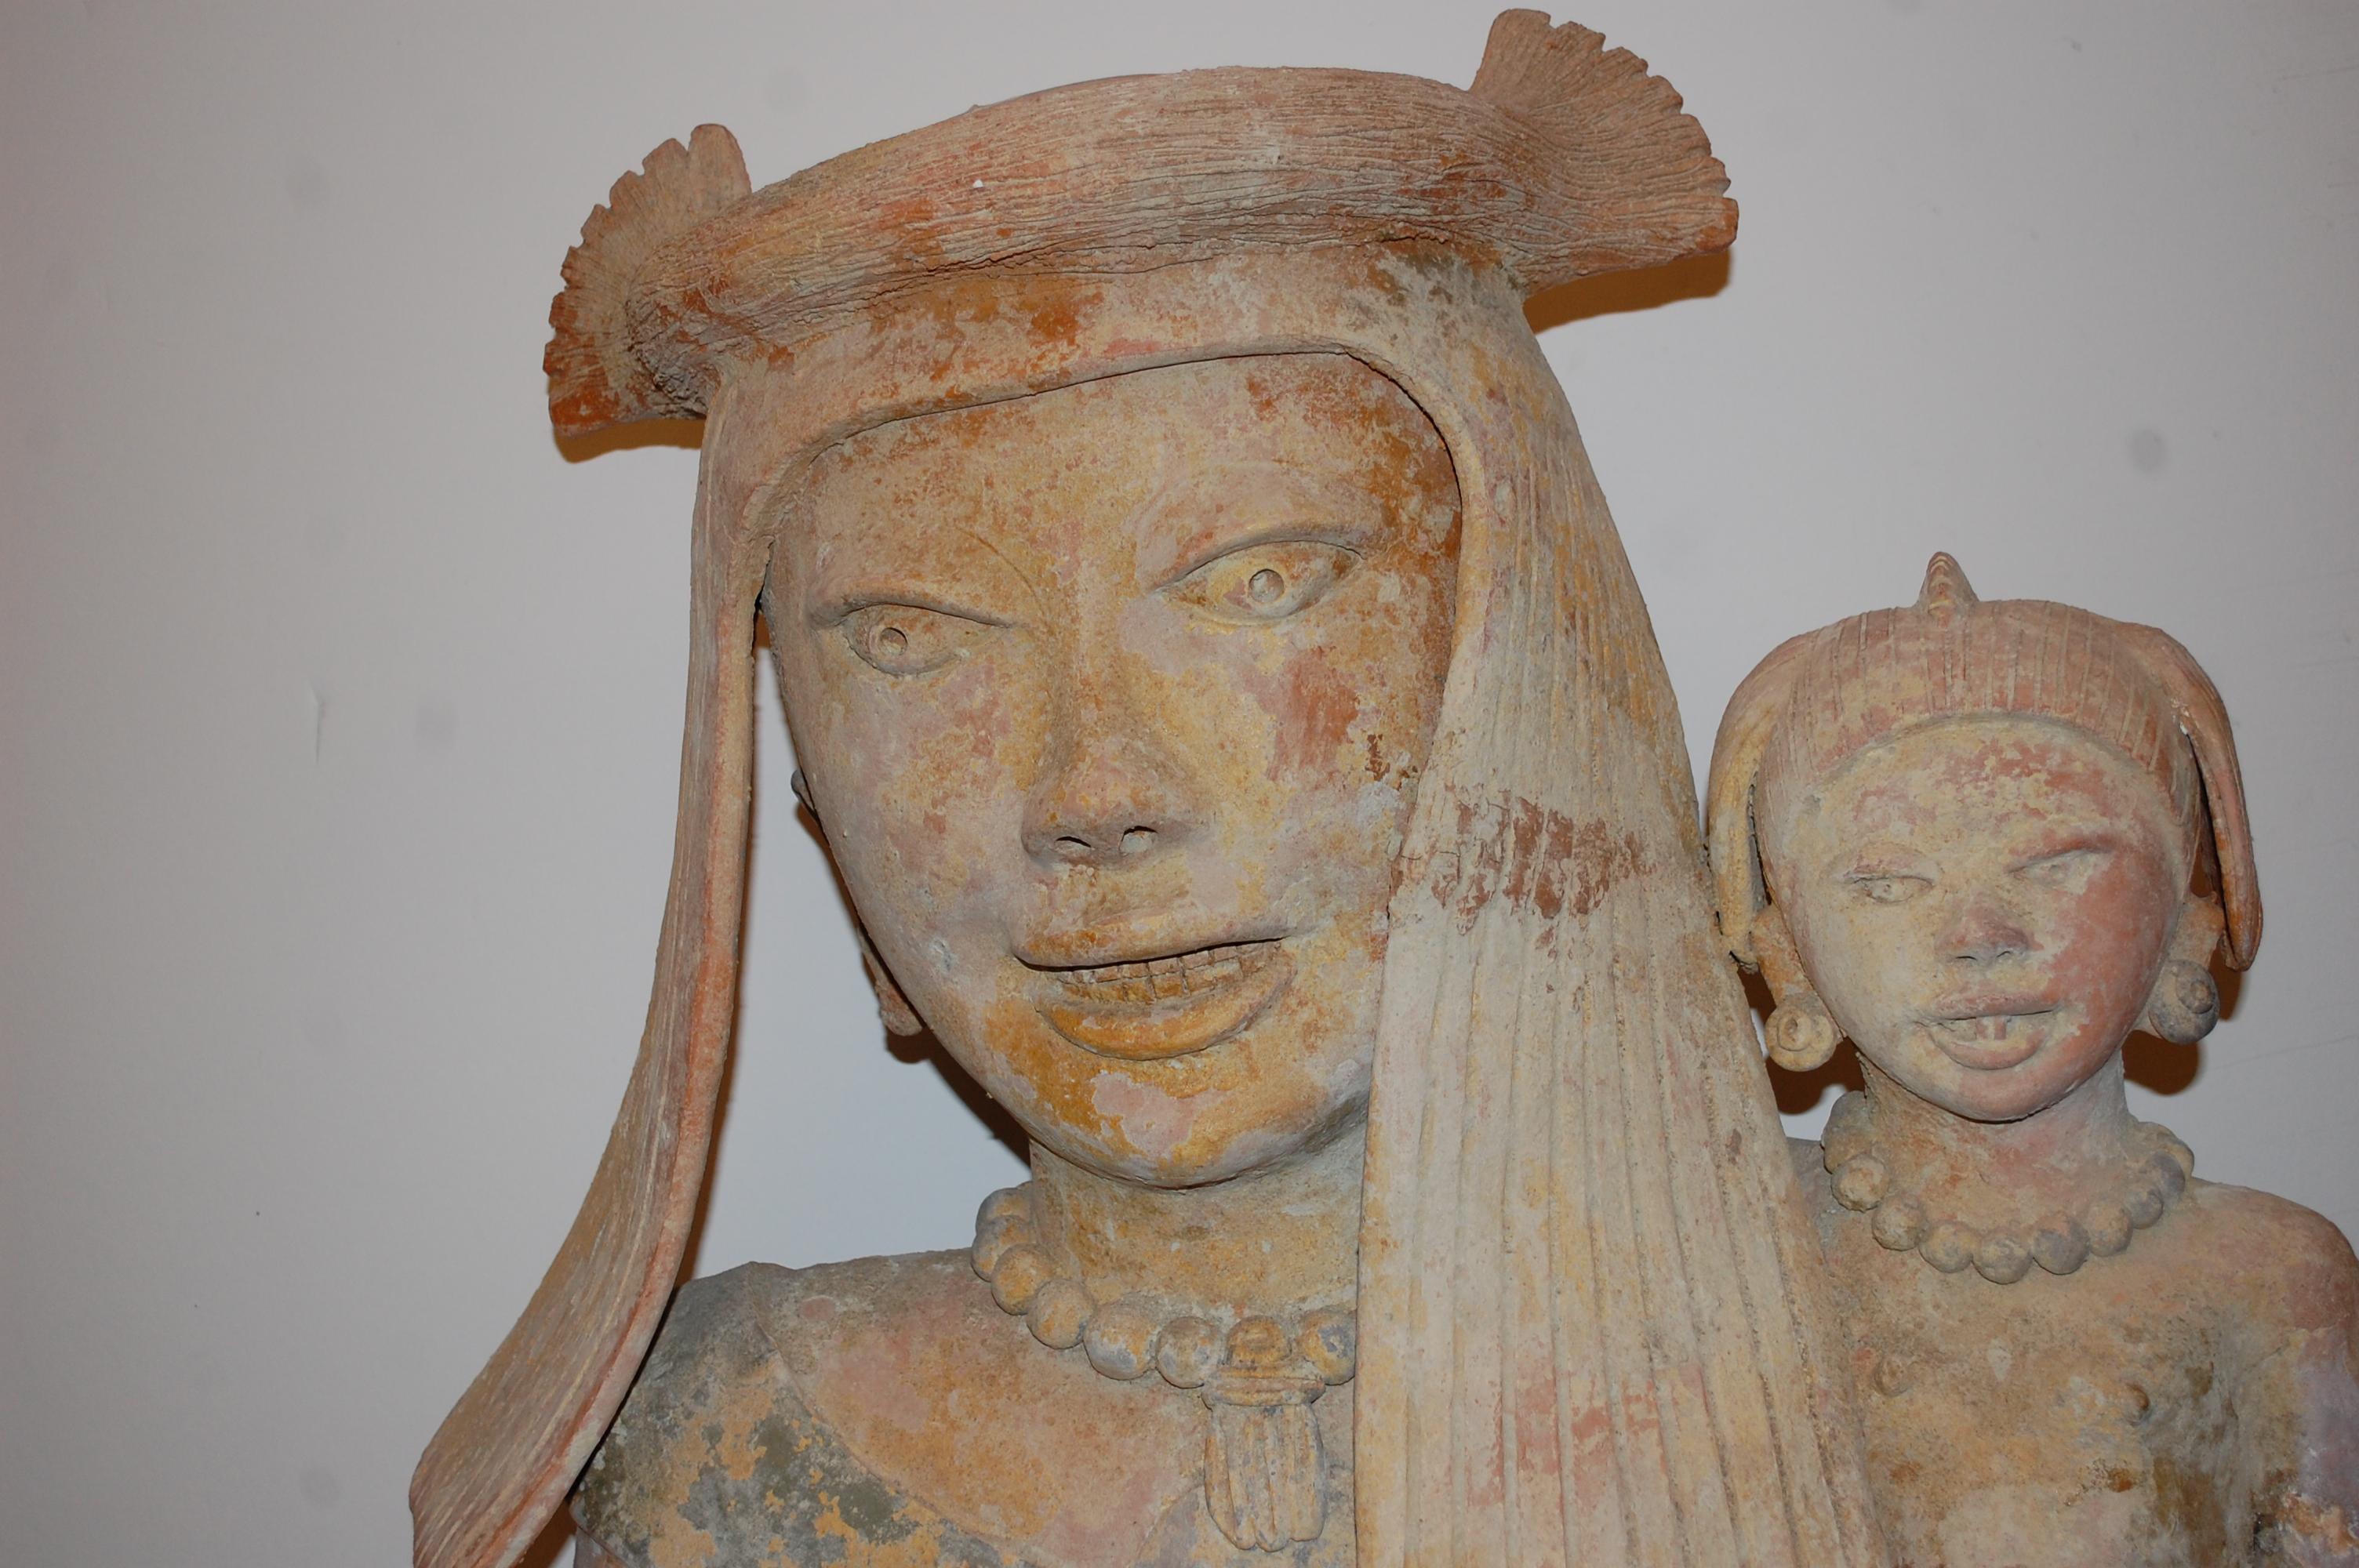   Mère tenant un bébé, grande sculpture en argile, style précolombien - Marron Figurative Sculpture par Walter Bastianetto